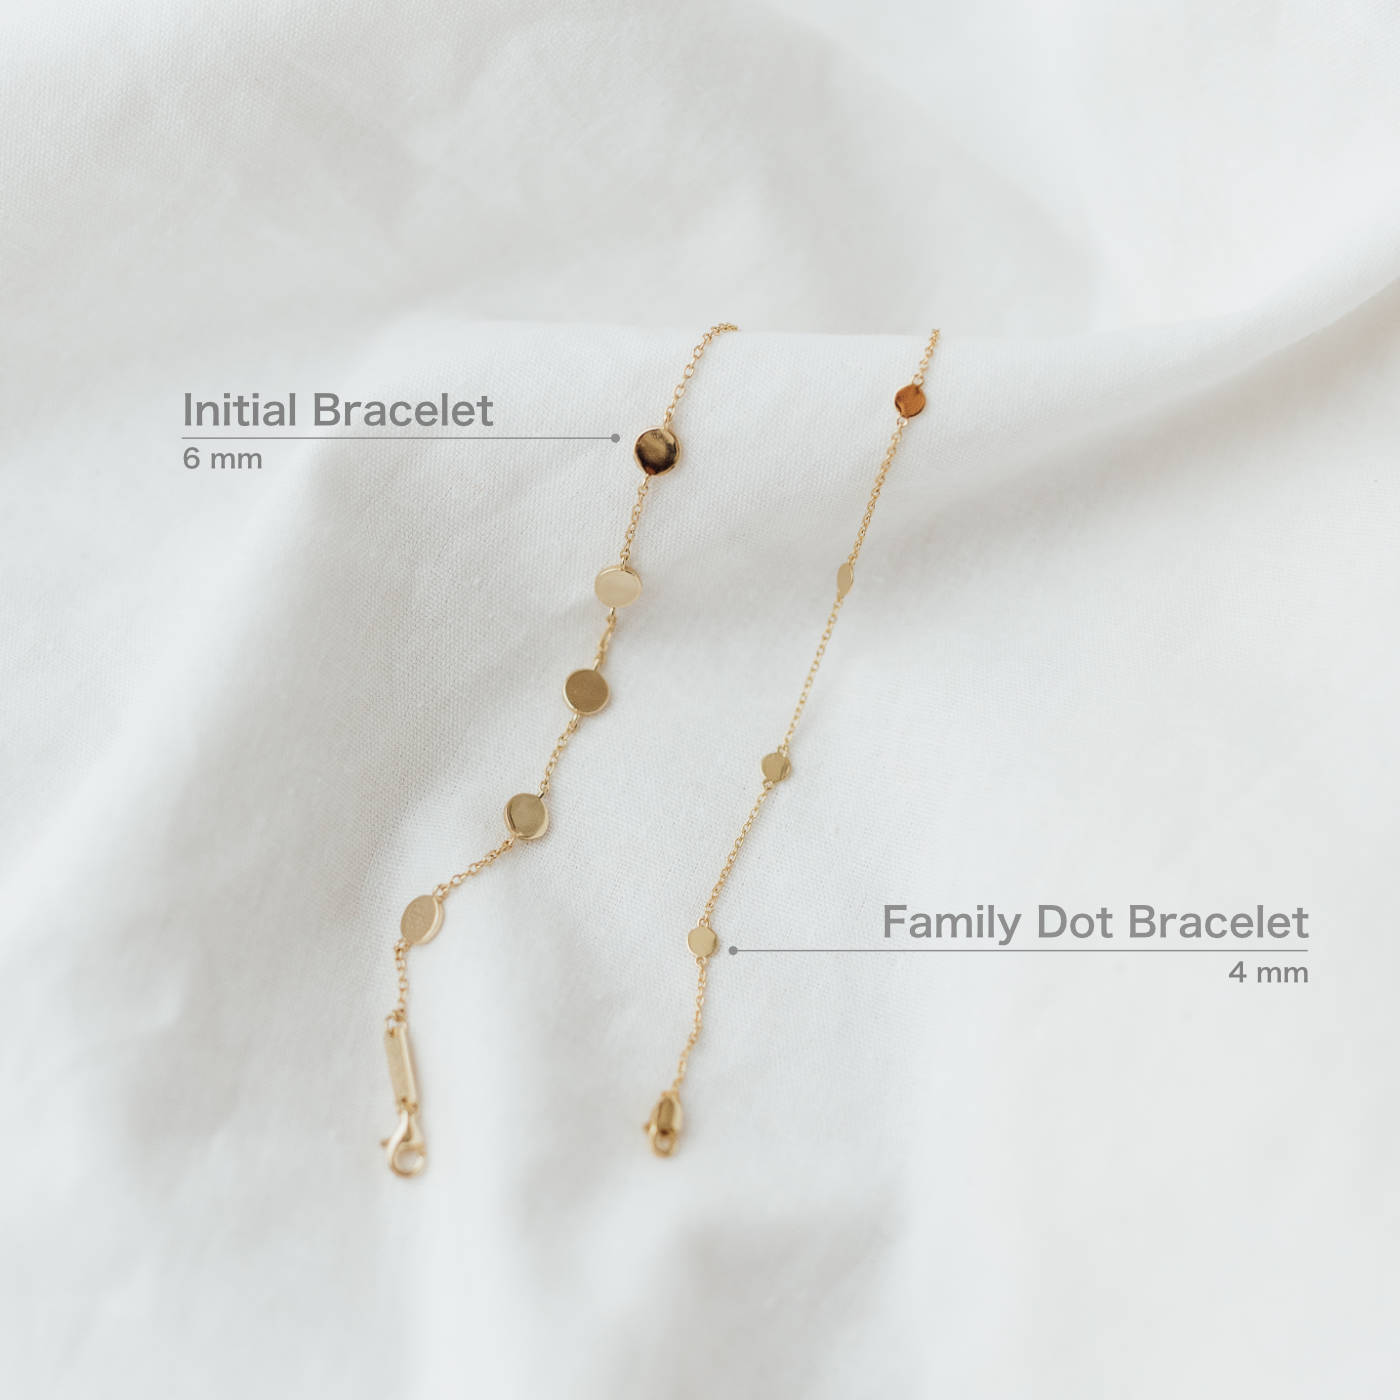 Family Dot Bracelet